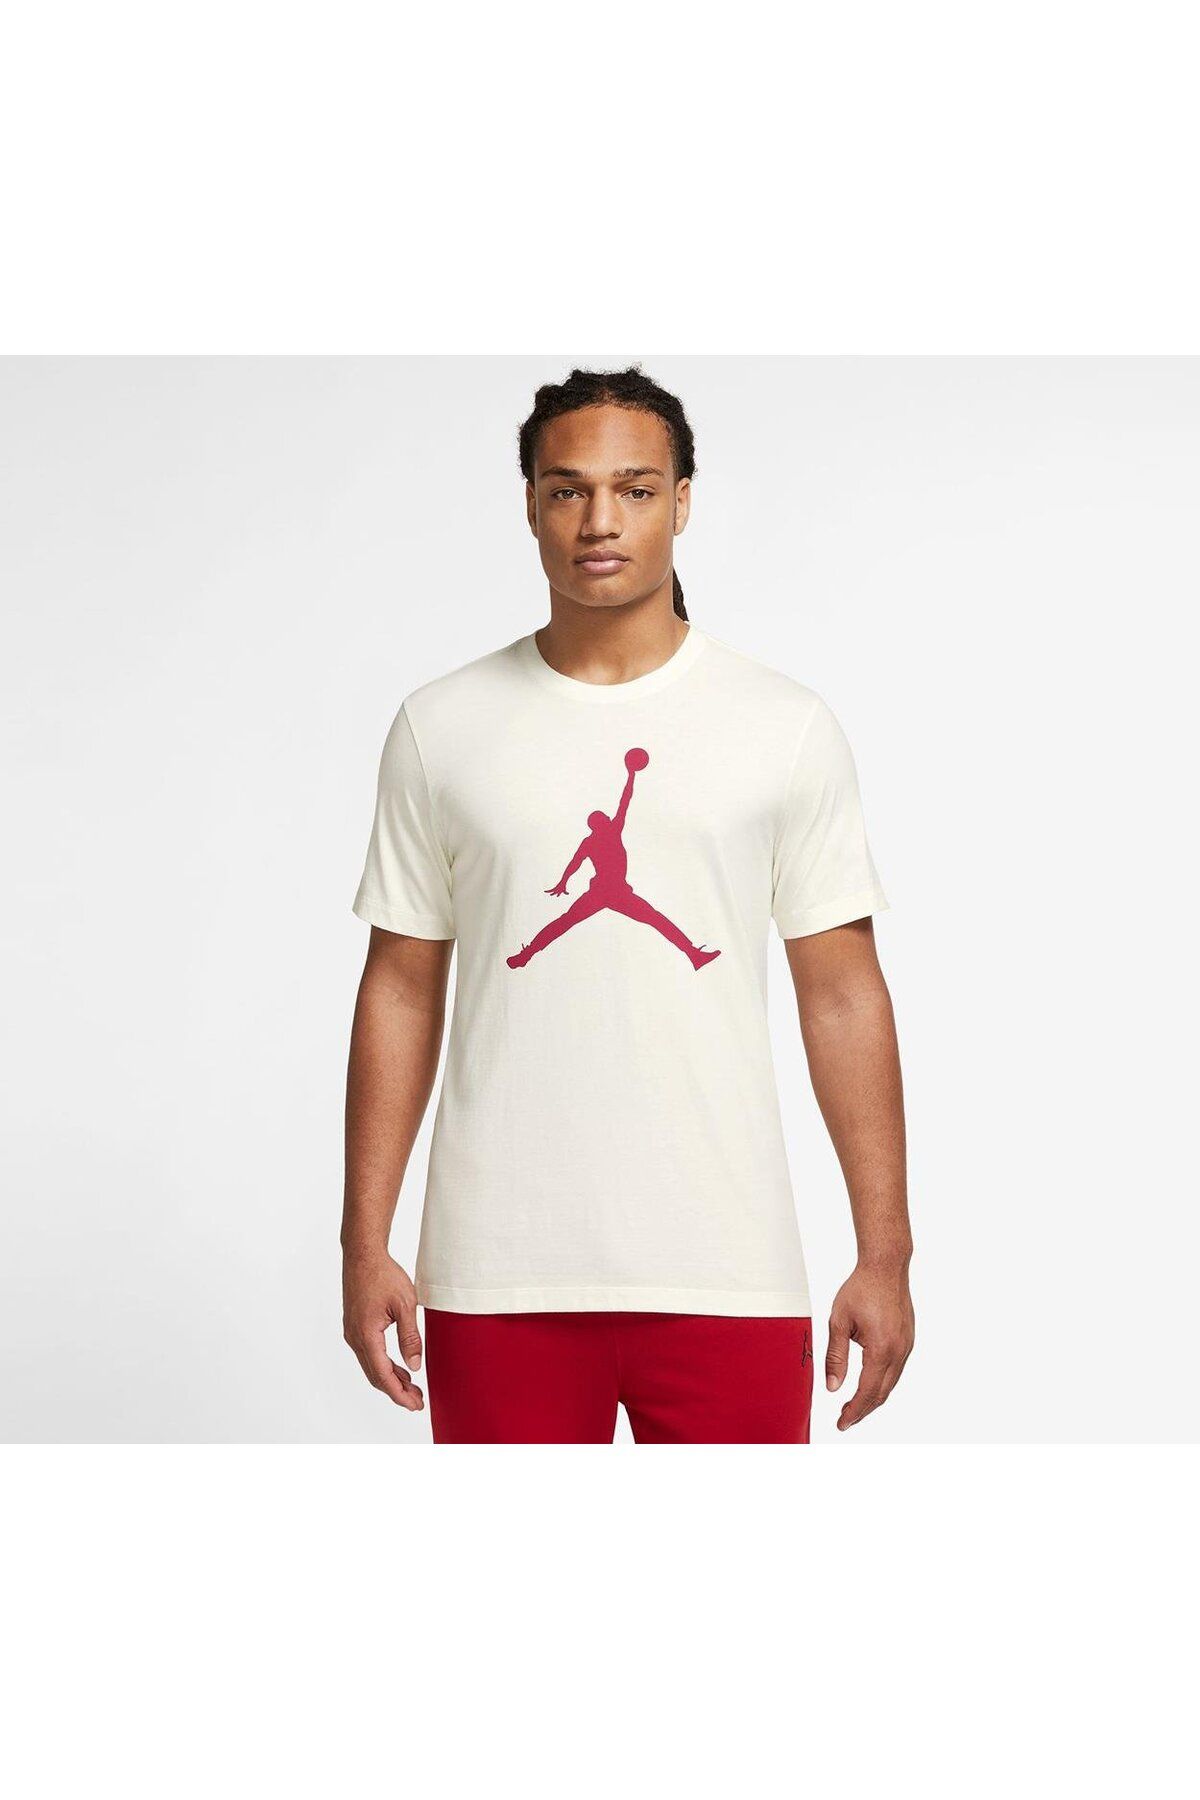 Nike Jordan Jumpman Erkek Tişört